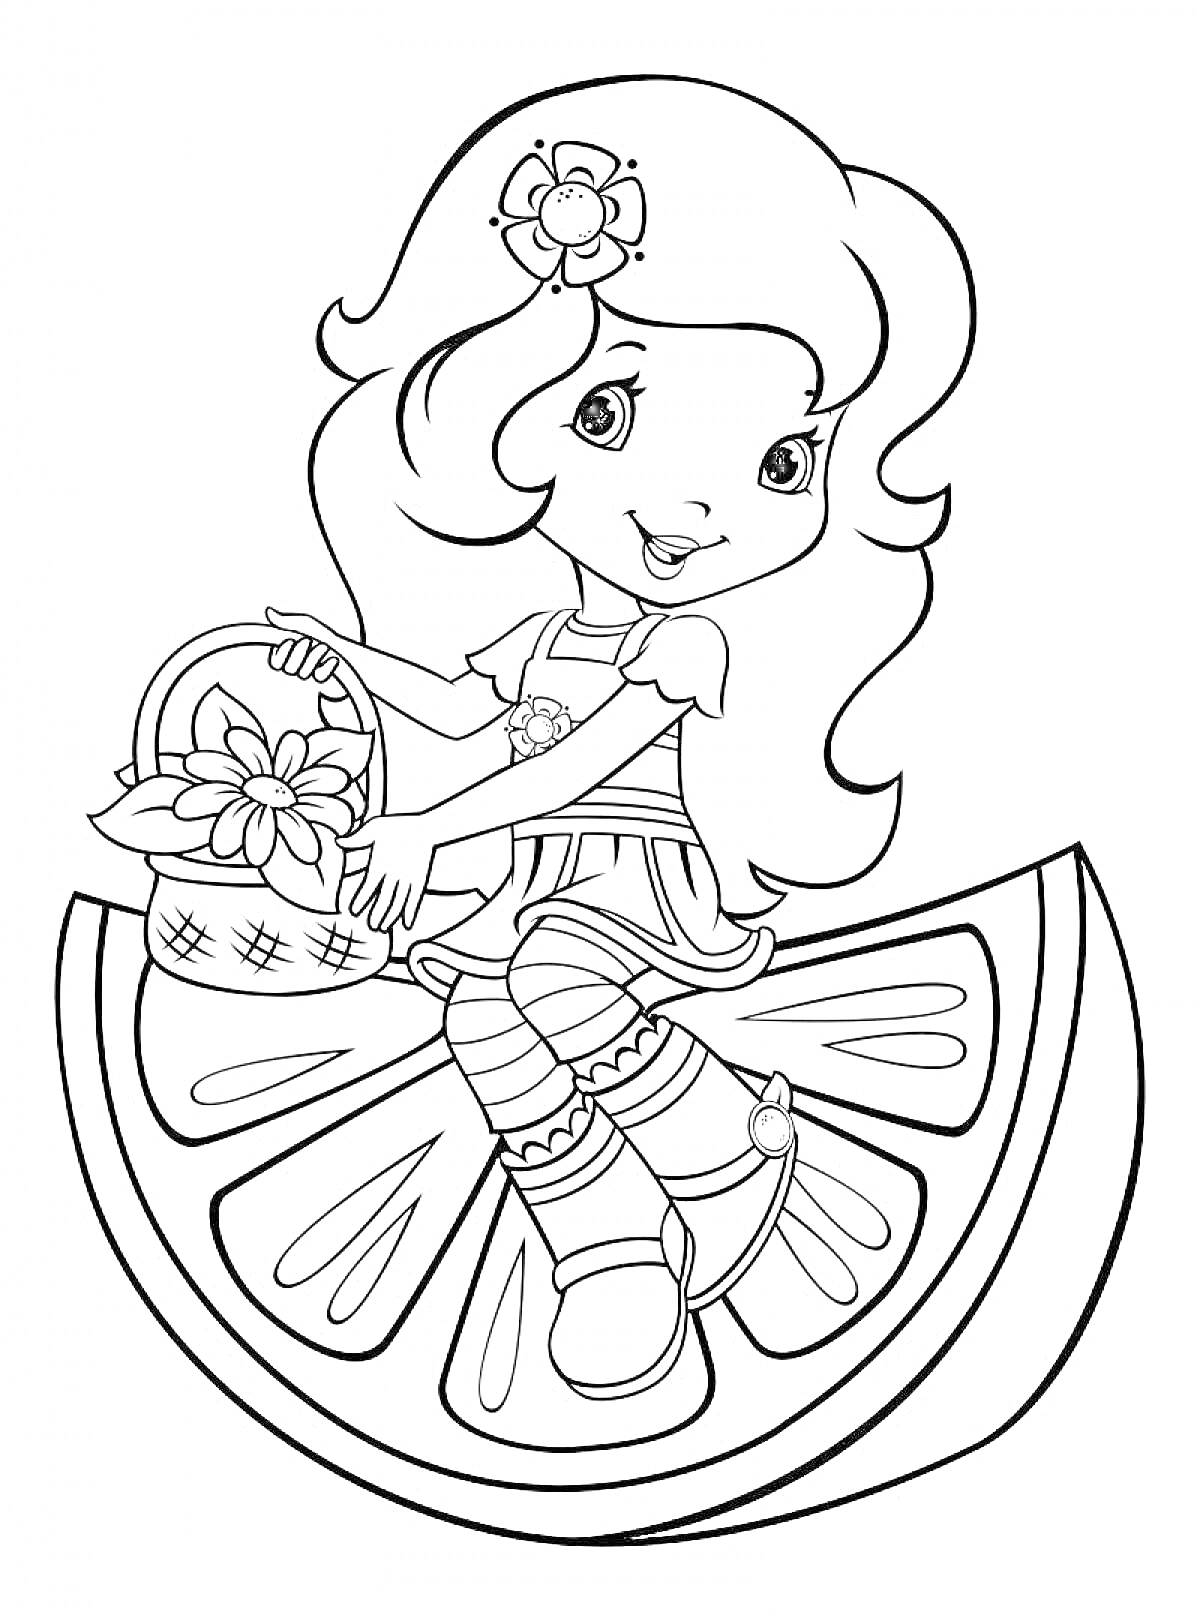 Девочка с длинными волосами и цветком в волосах, сидящая на дольке фрукта, с корзиной цветов